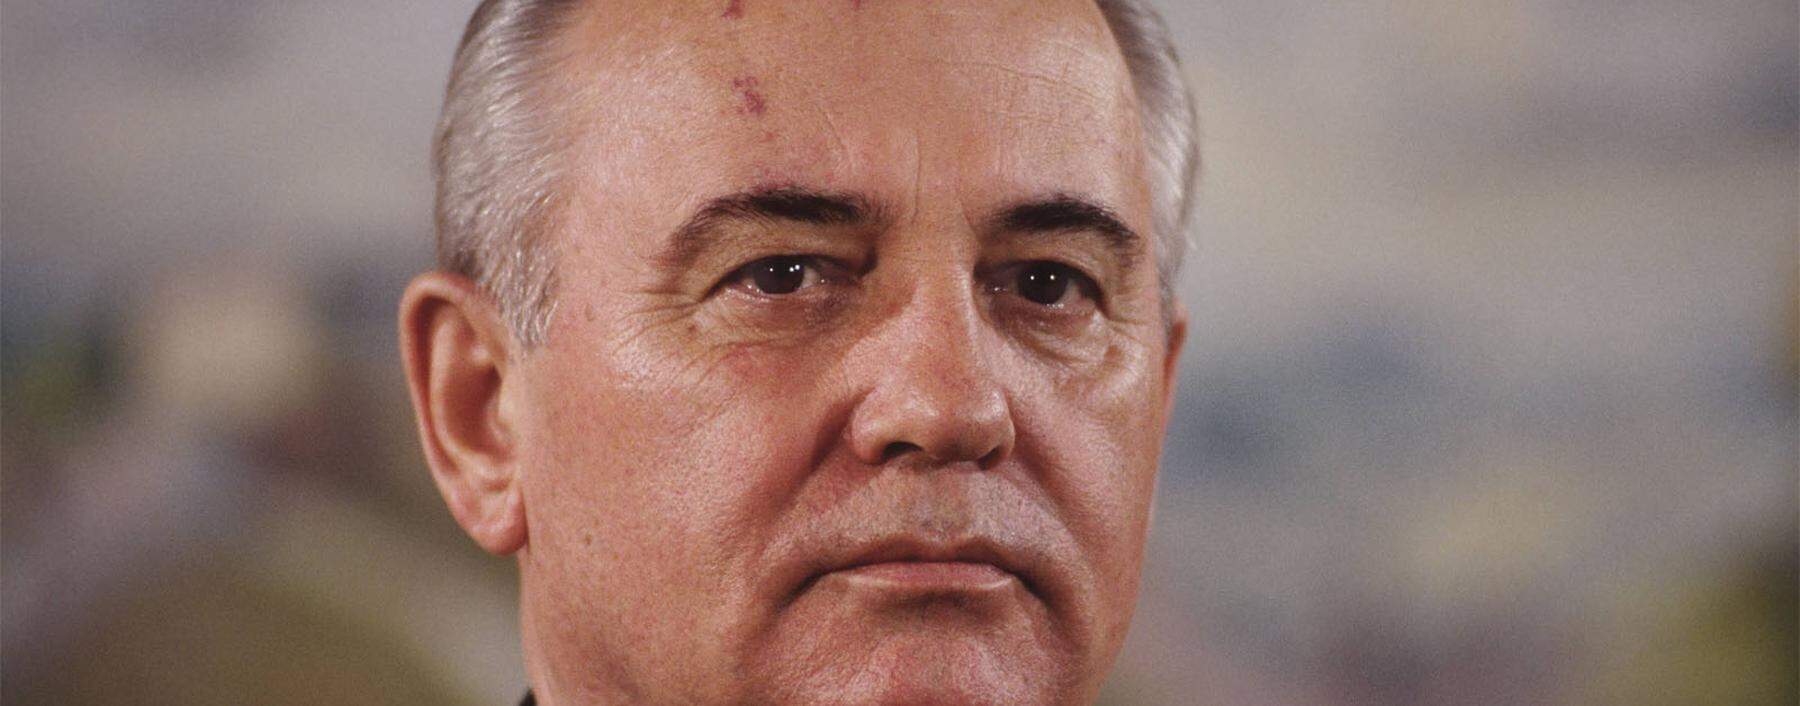 Michael Gorbatschow war einer der Väter der deutschen Wiedervereinigung.